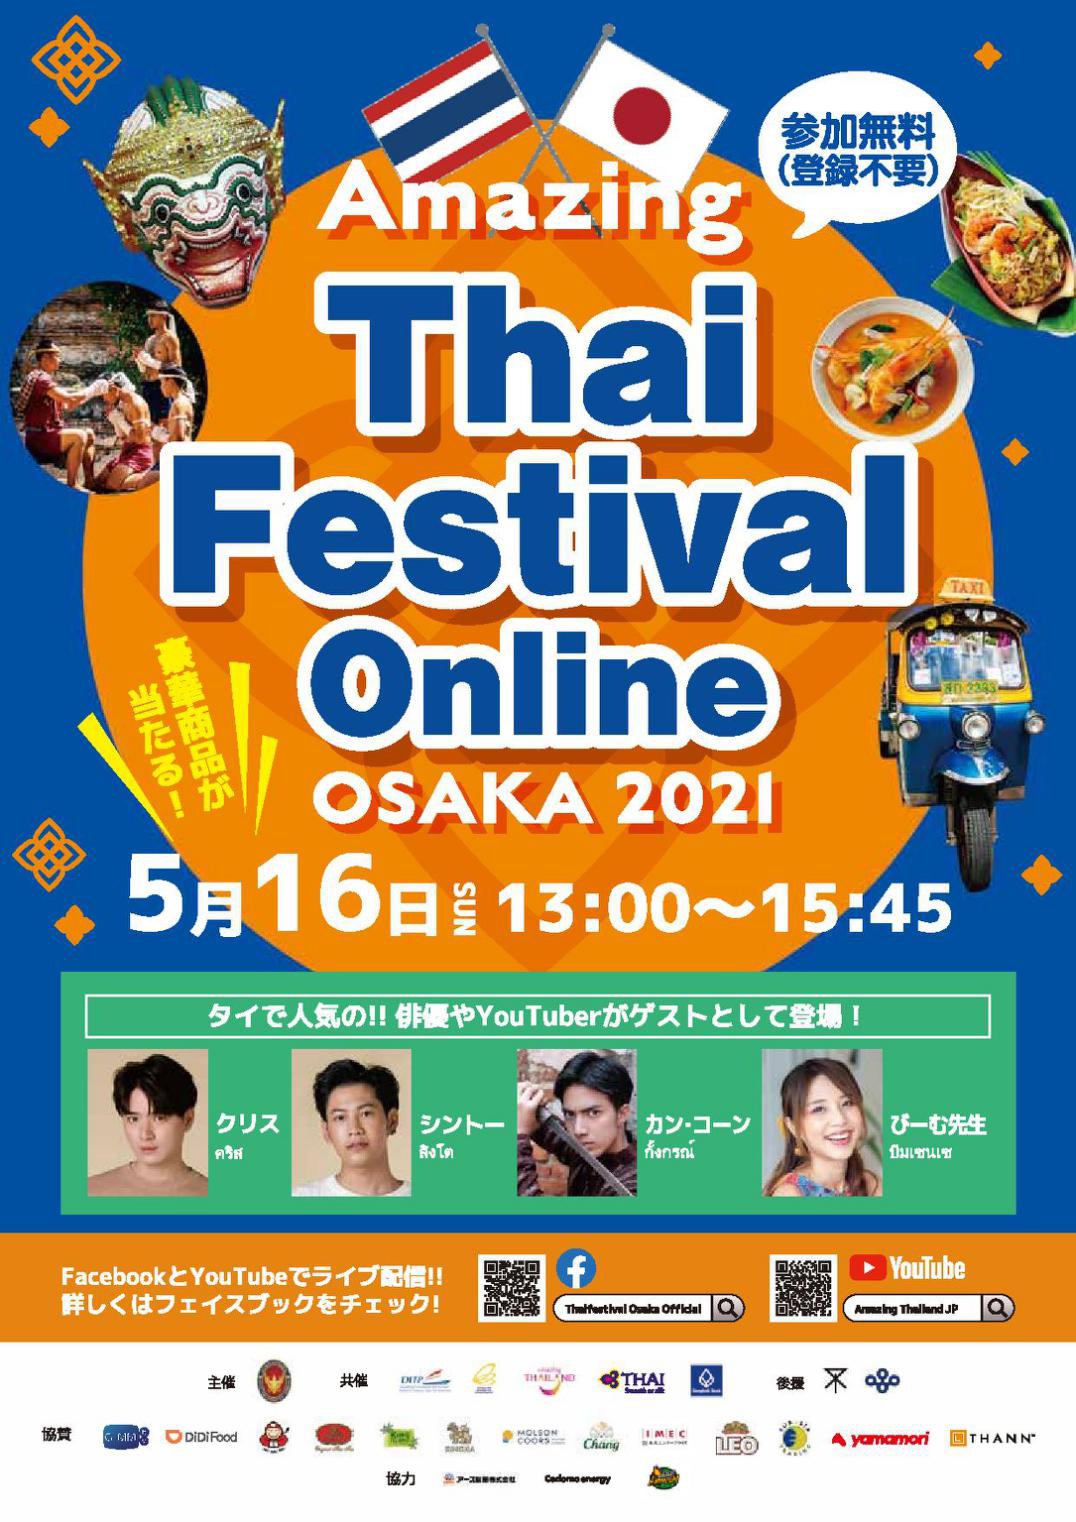 Thai_Festival_Online_Osaka_2021_Poster